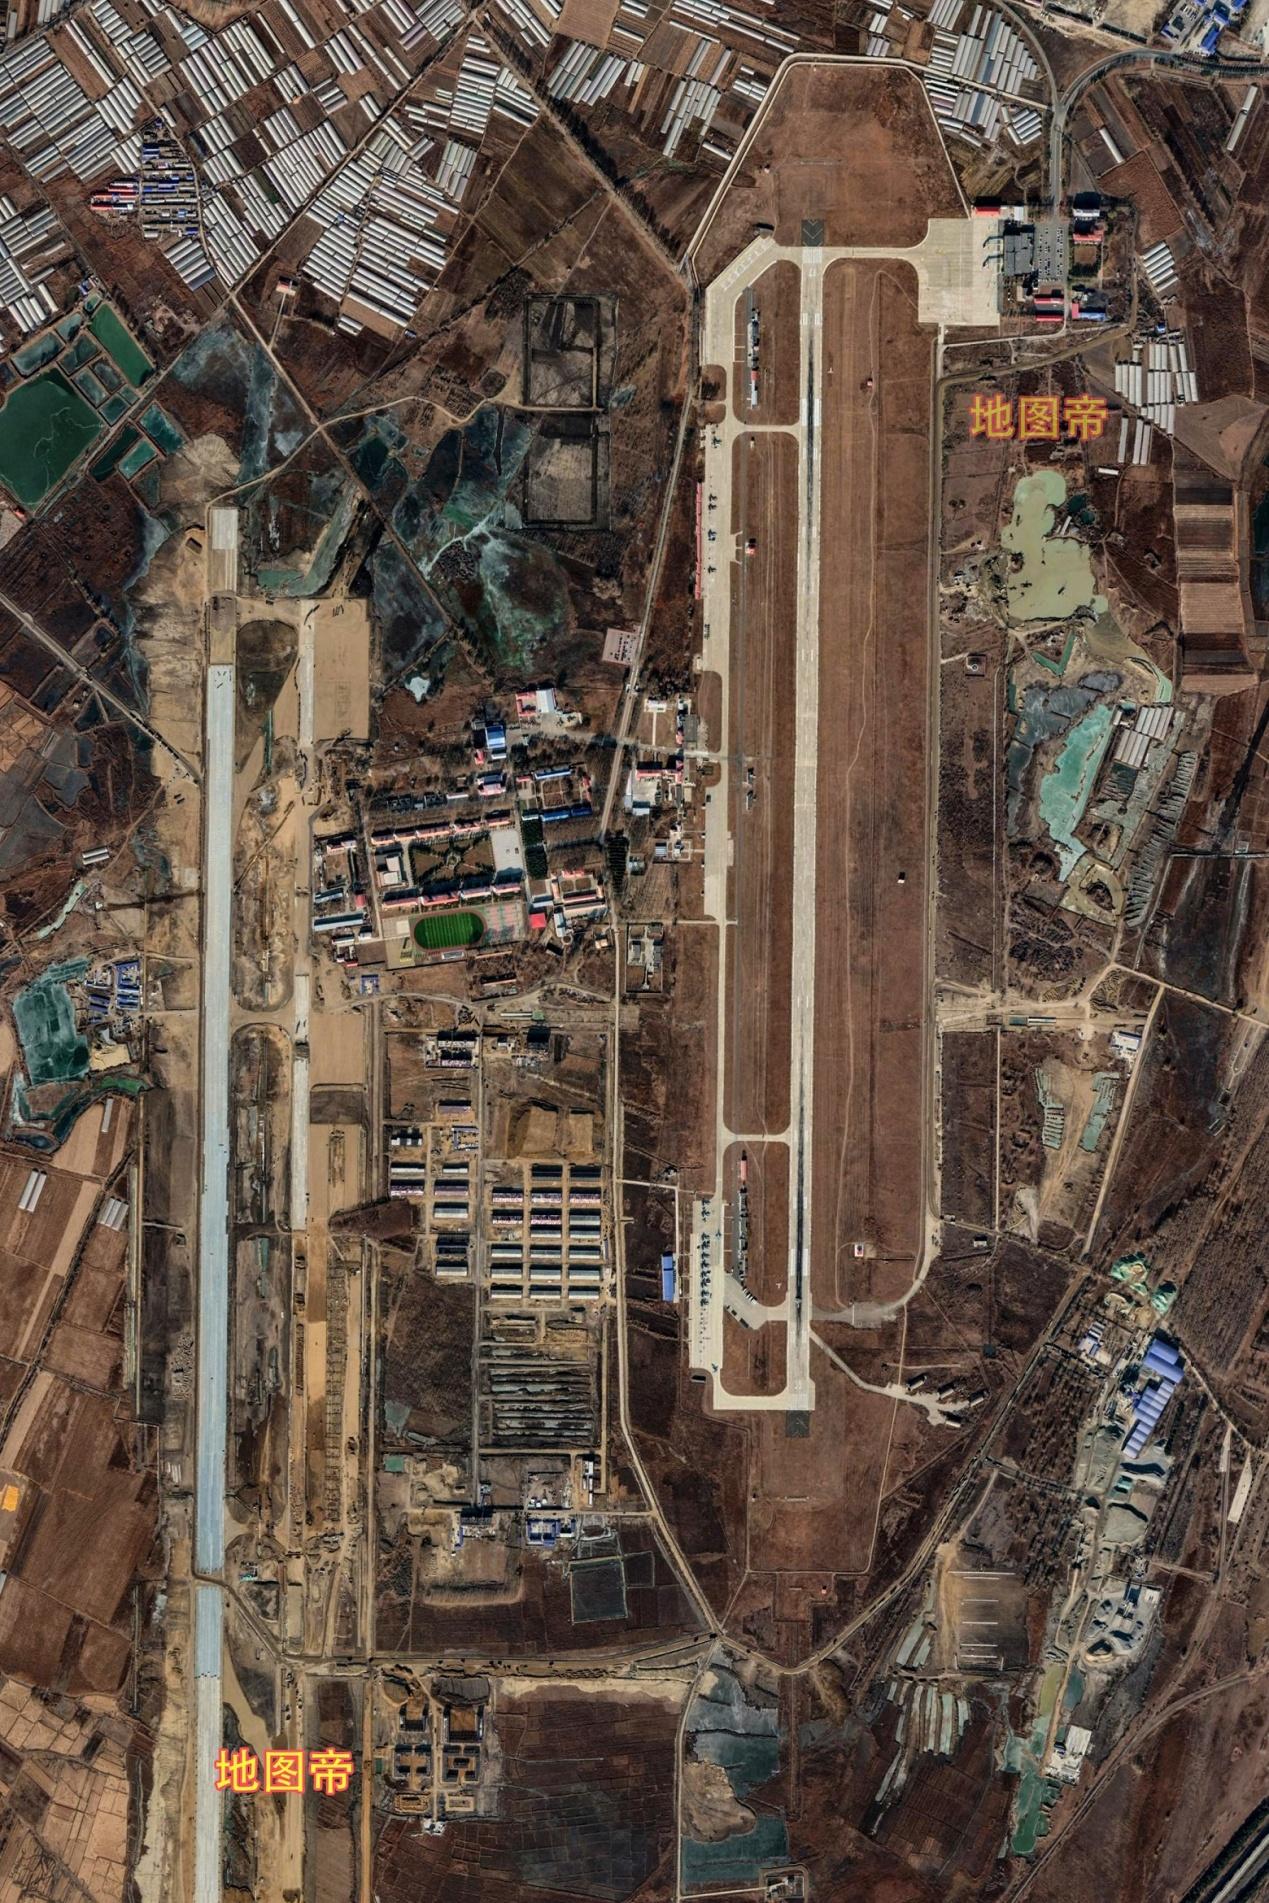 牡丹江海浪国际机场牡丹江海浪国际机场,位于黑龙江省牡丹江市西南